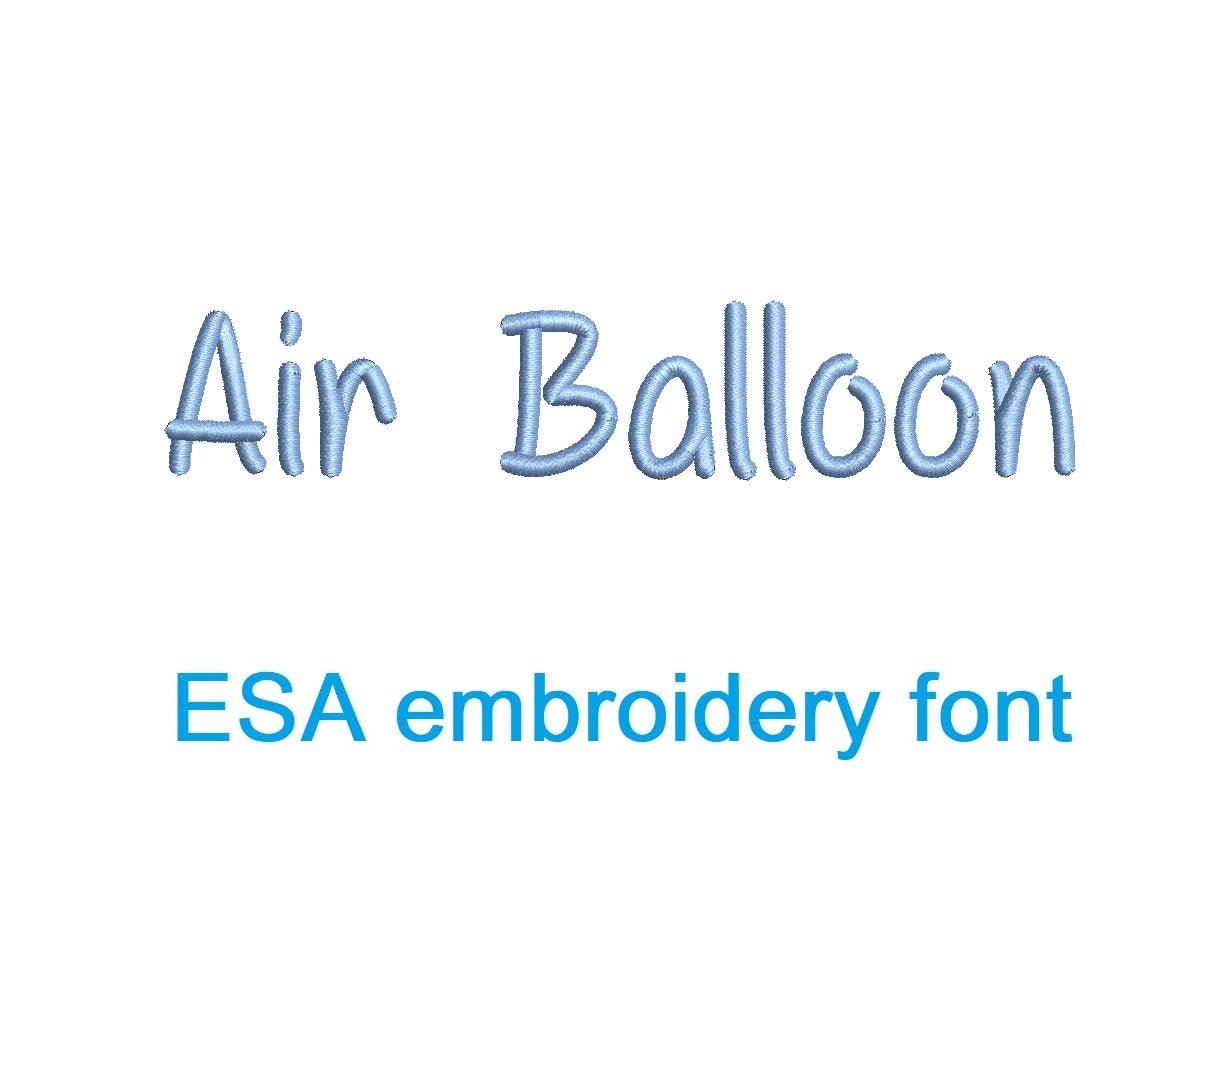 Air balloon esa for sale  